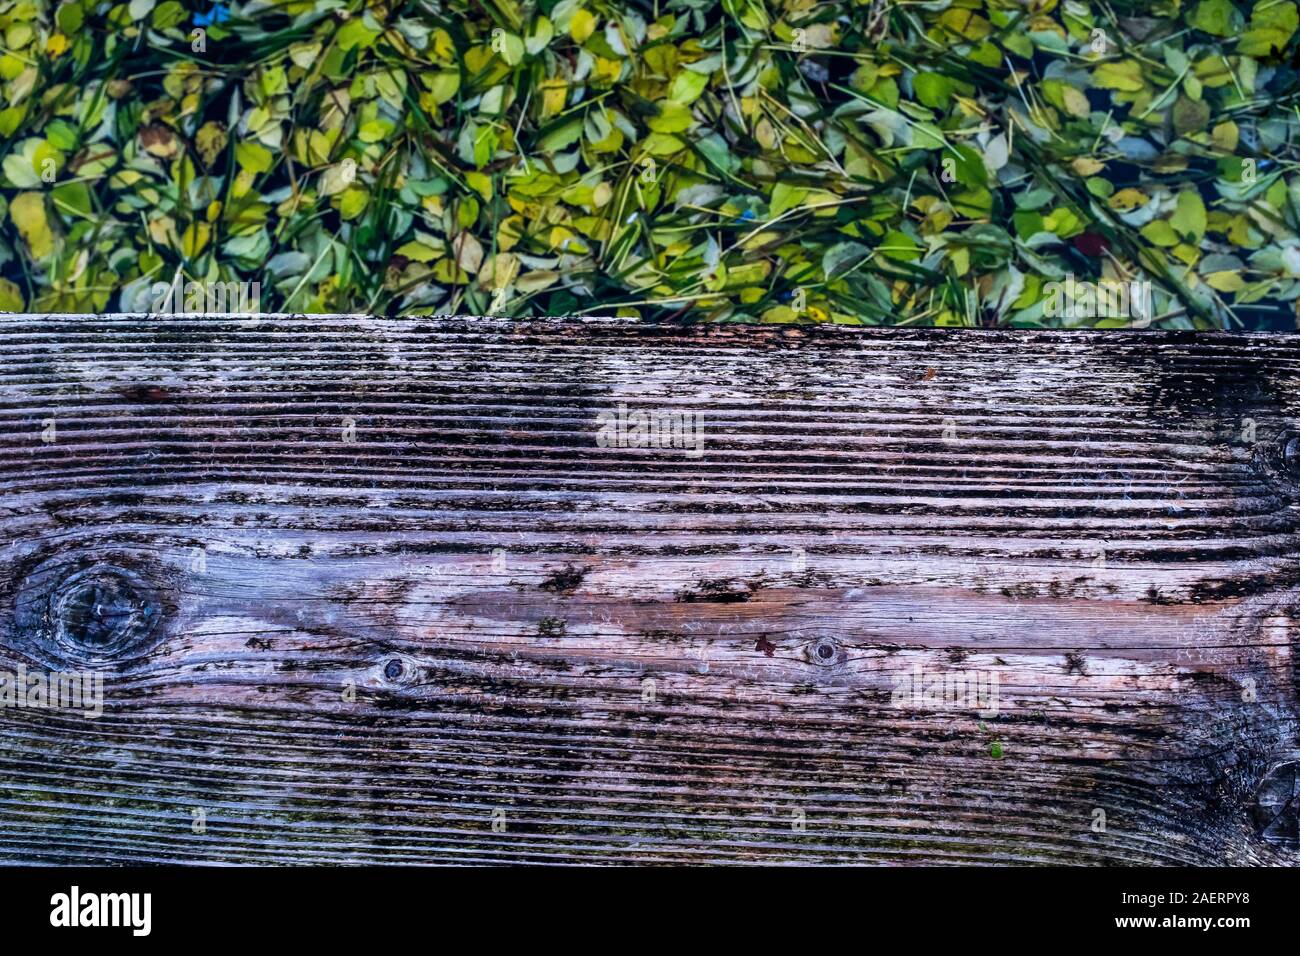 Da un sentiero in legno, un occhiata ad uno spesso tappeto di foglie pads galleggiante sul lago di acqua. Focus sul primo piano a la tavola in legno. Foto Stock